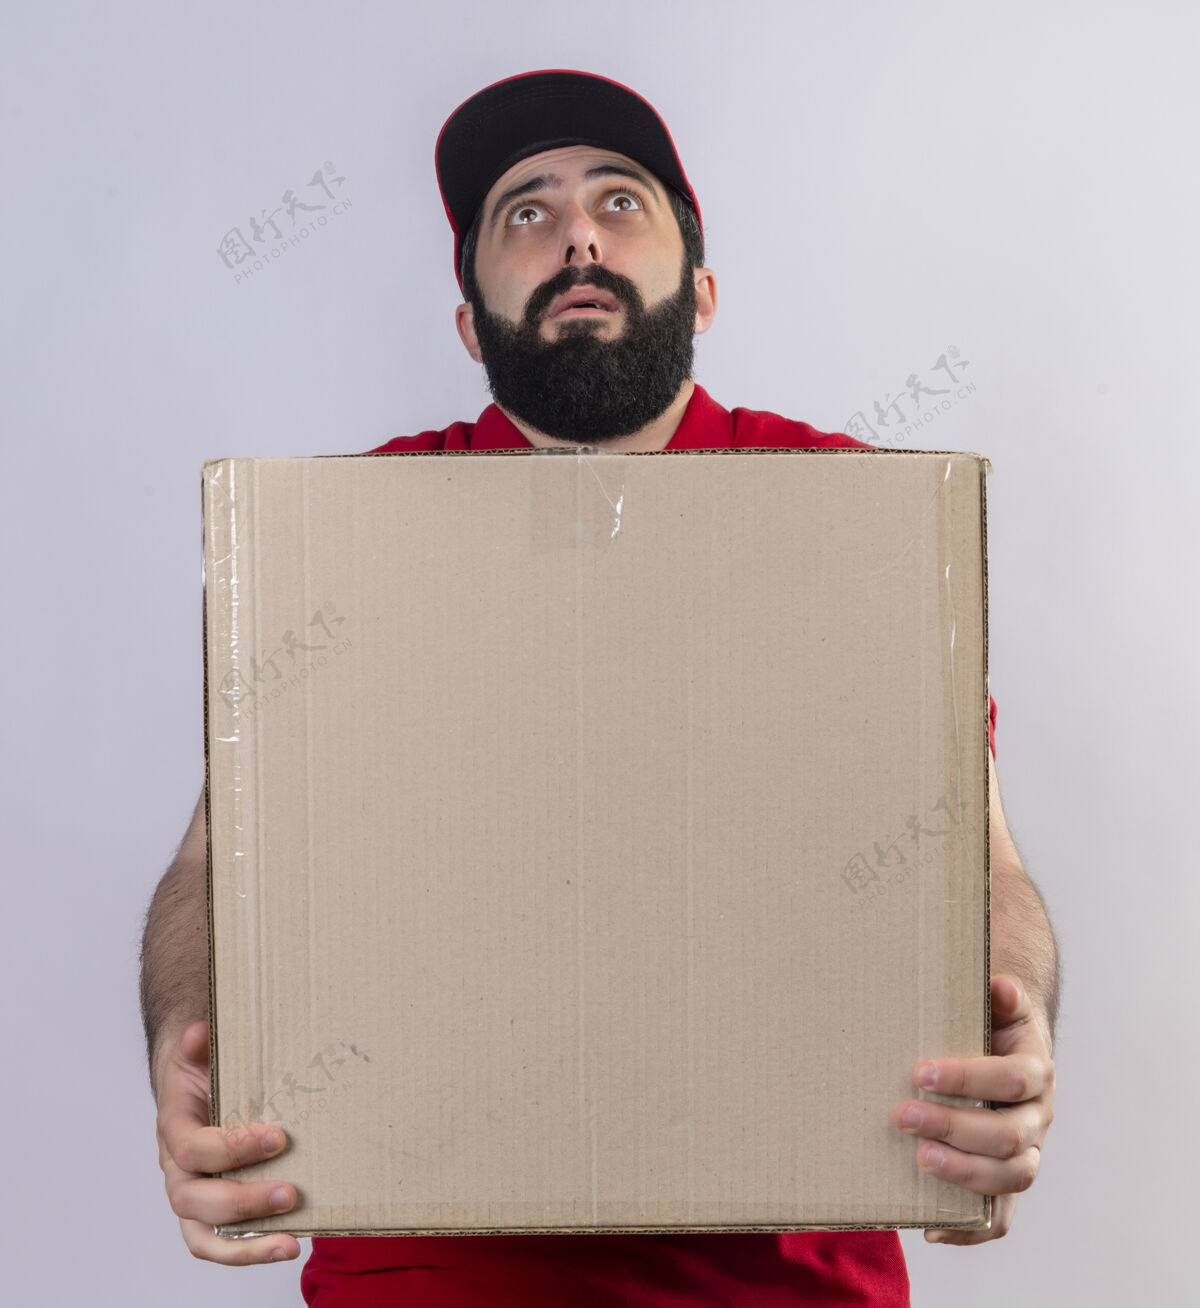 向上印象深刻的年轻英俊的白人送货员穿着红色制服 戴着帽子拿着纸箱 抬头望着孤立的白色制服帅气交货